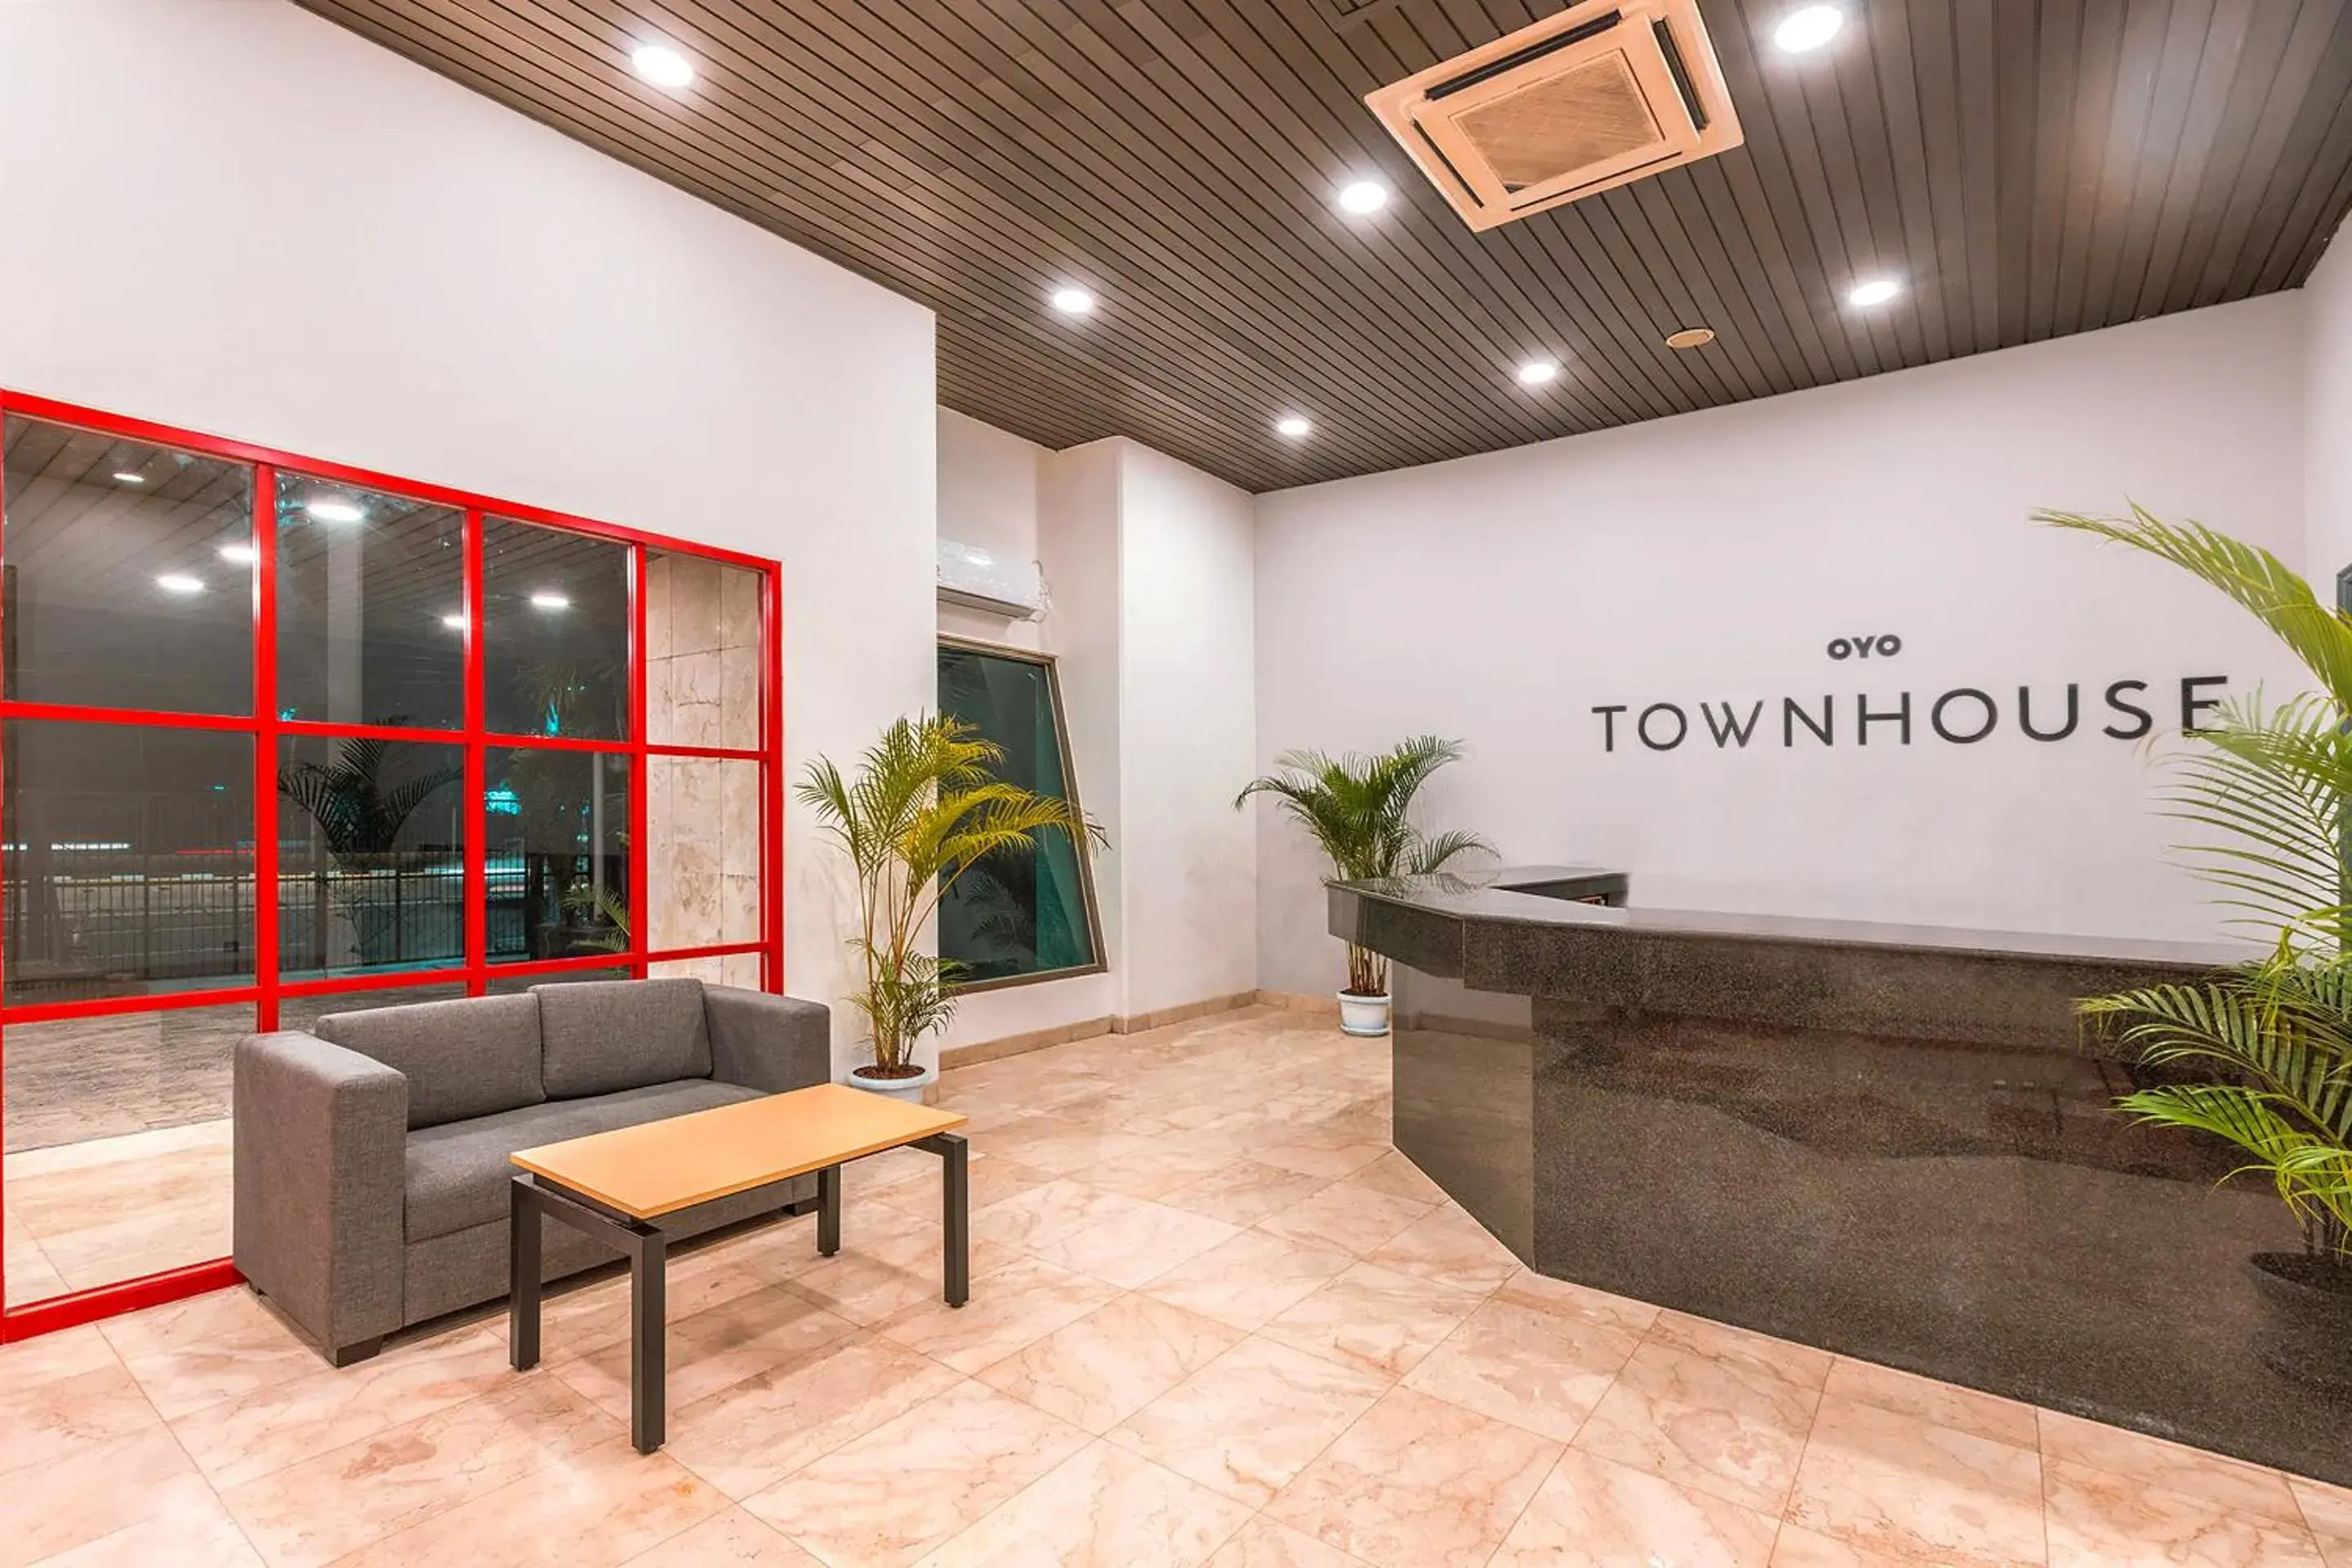 Lobby or reception, Lobby/Reception in OYO Townhouse 2 Hotel Gunung Sahari